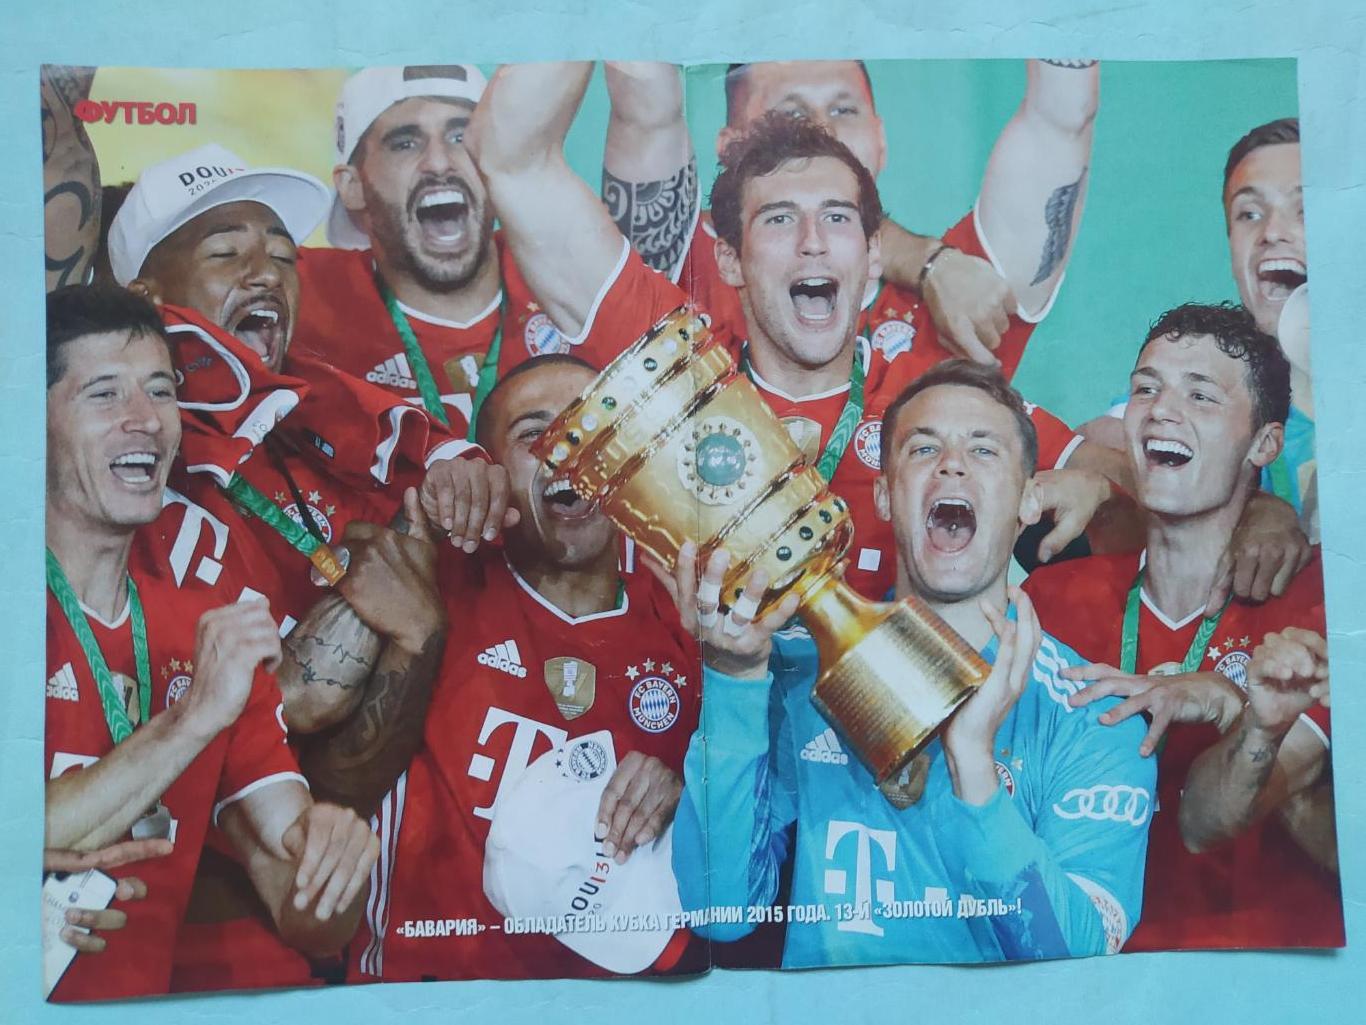 Из журнала Футбол Украина ФК Бавария - обладатель Кубка Германии 2015 год